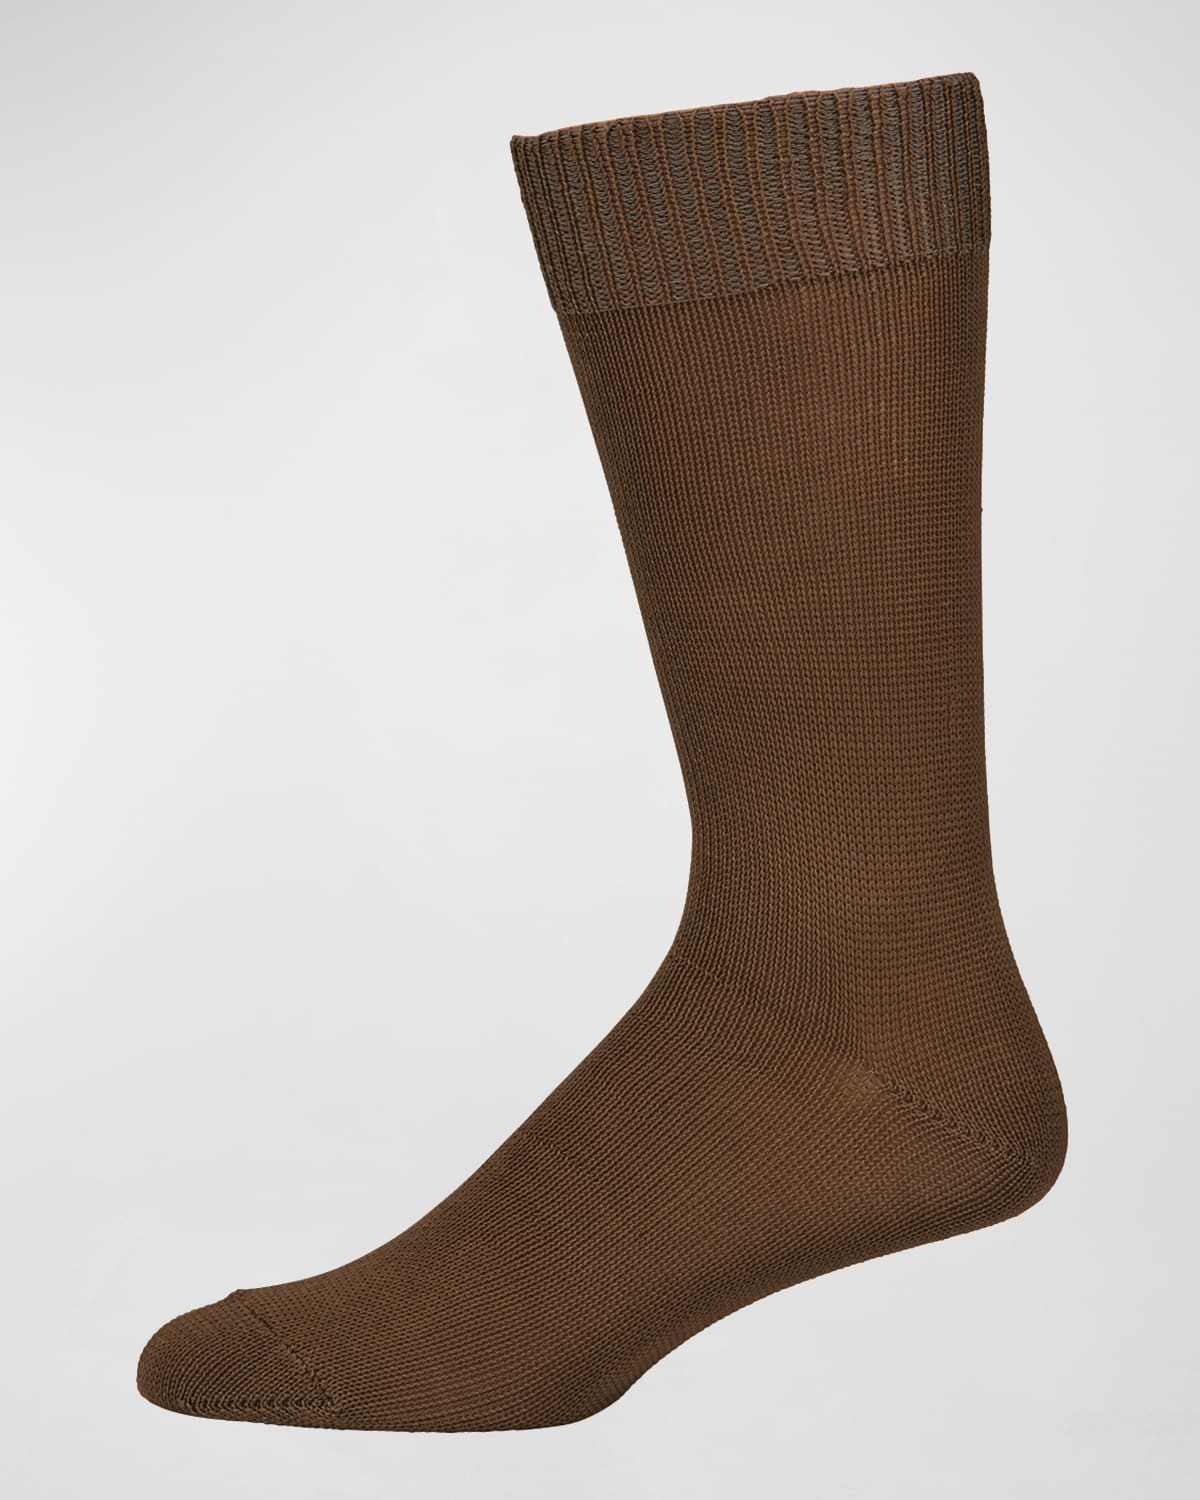 Neiman Marcus Men's Casual Cotton-blend Knit Socks In Beige